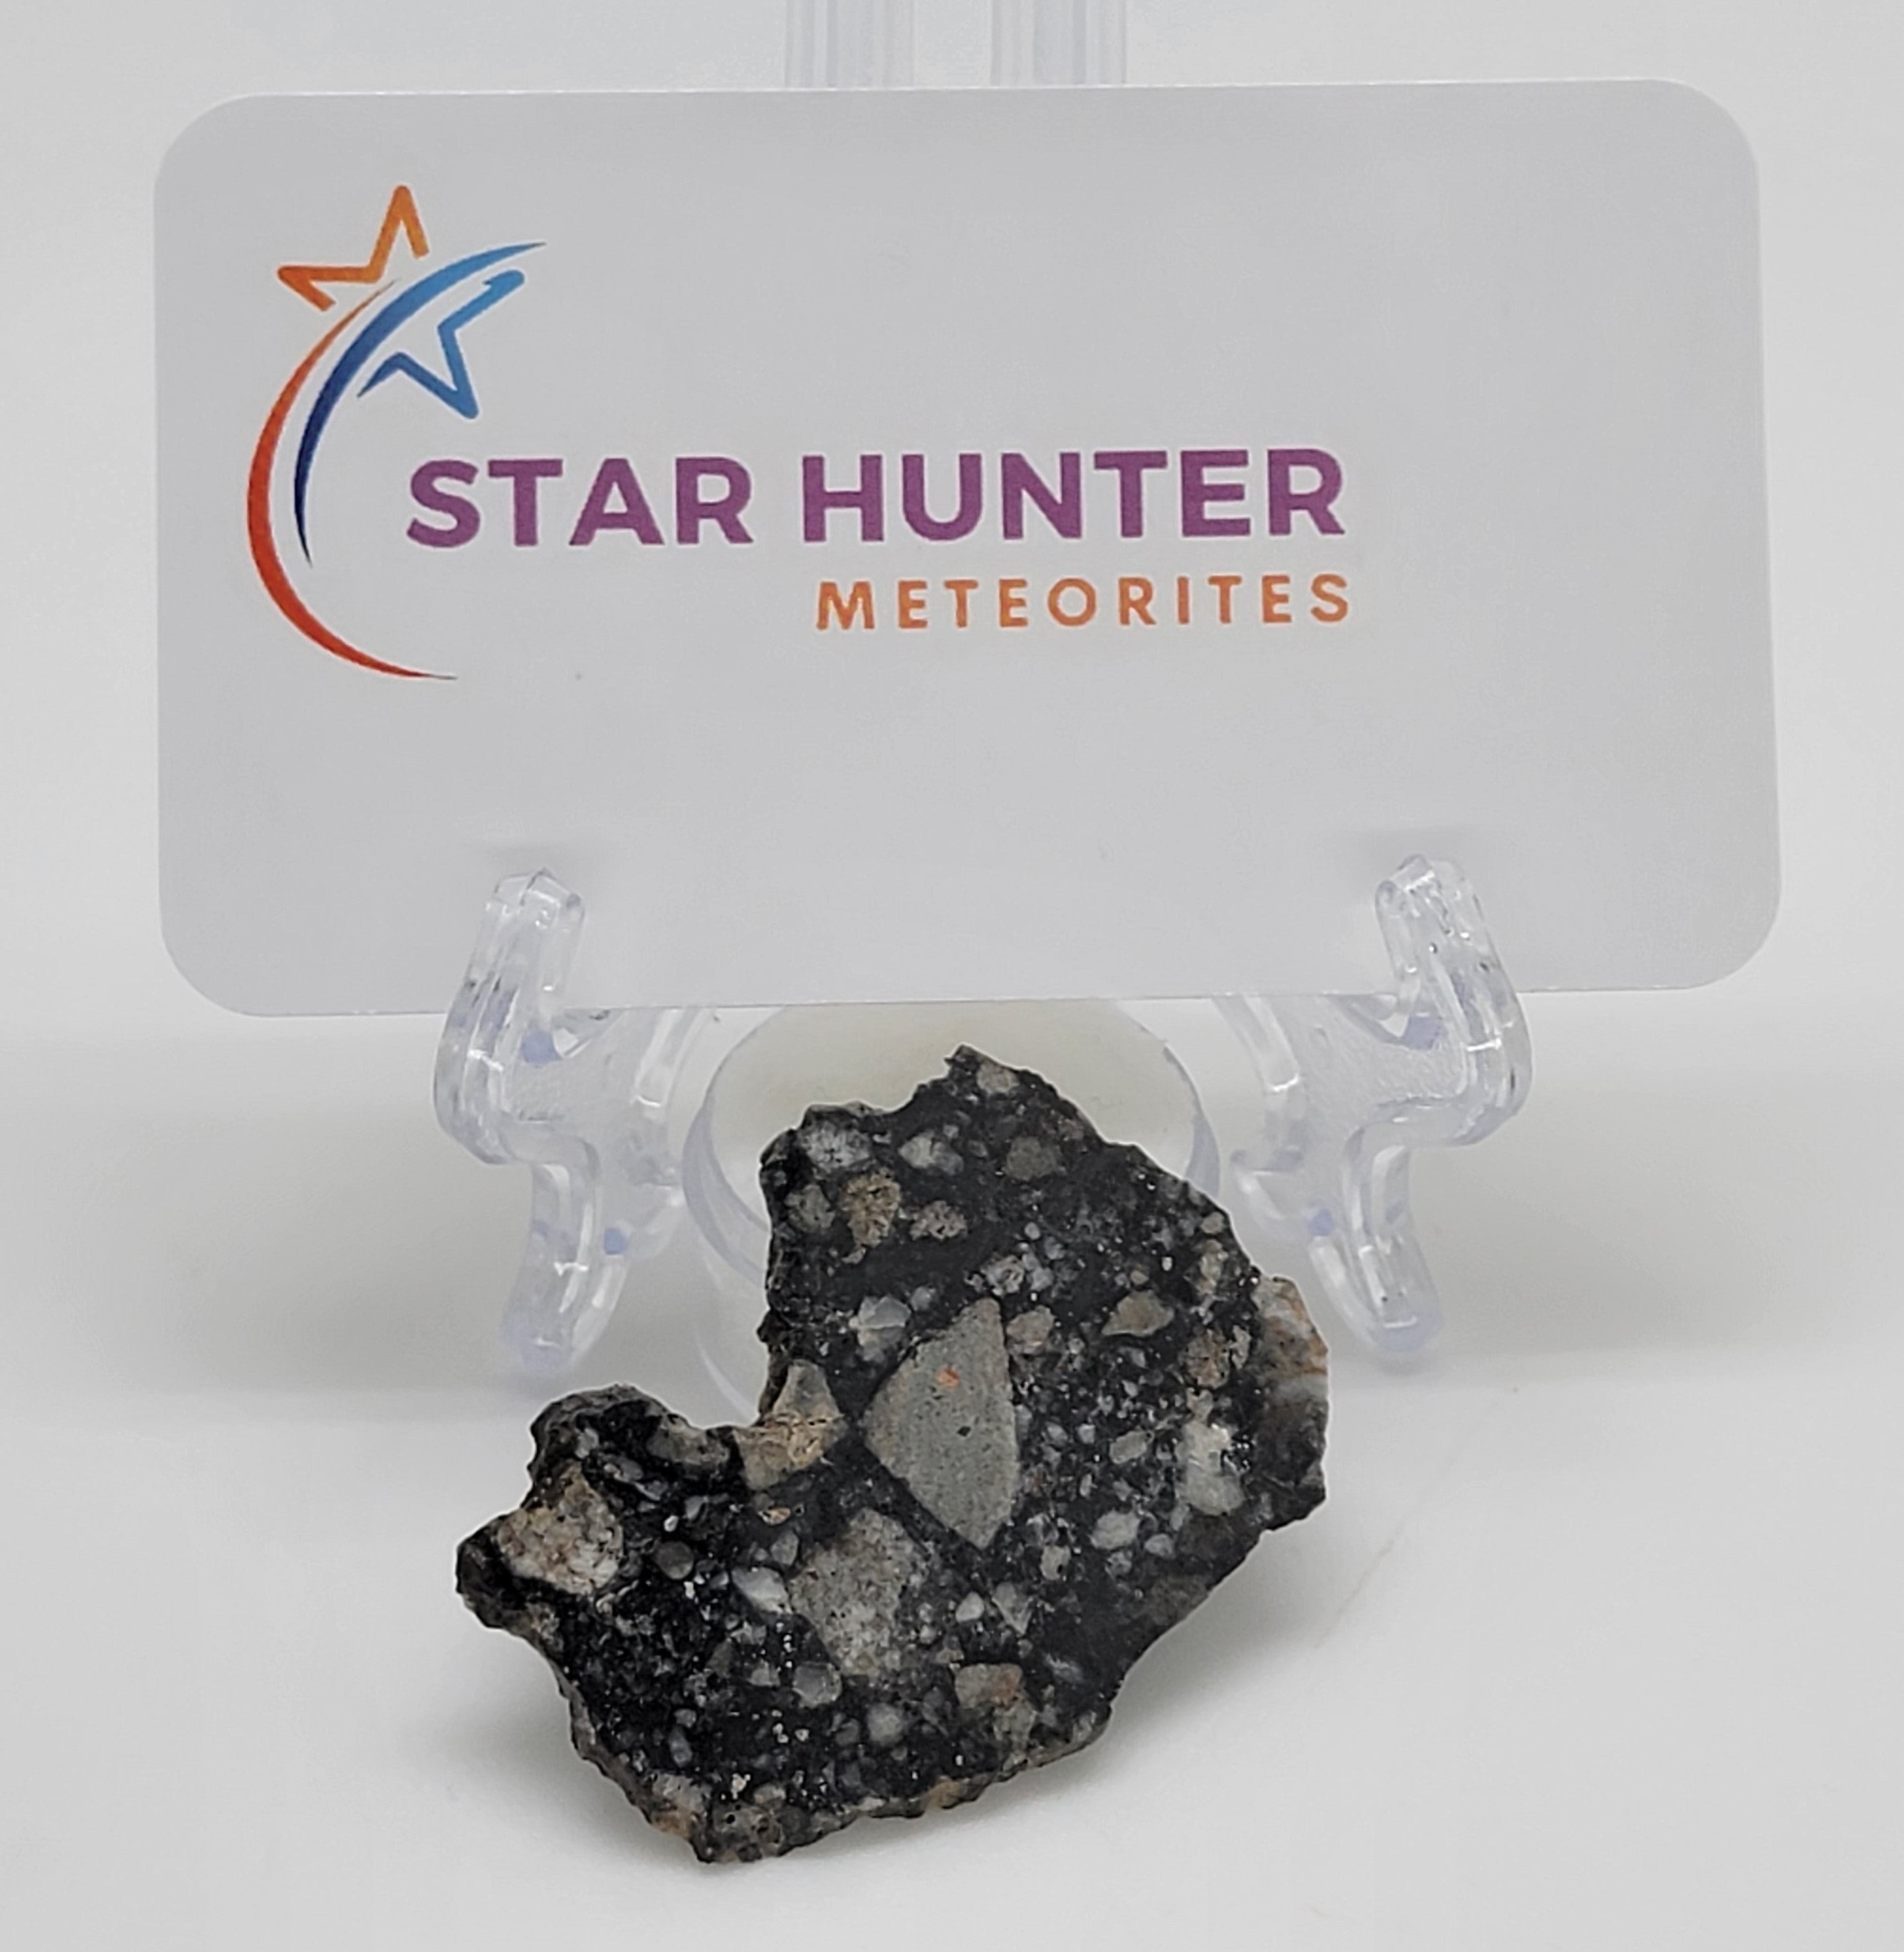 NWA 14685 Lunar Fragmental Breccia Meteorite Slice - 6.9g